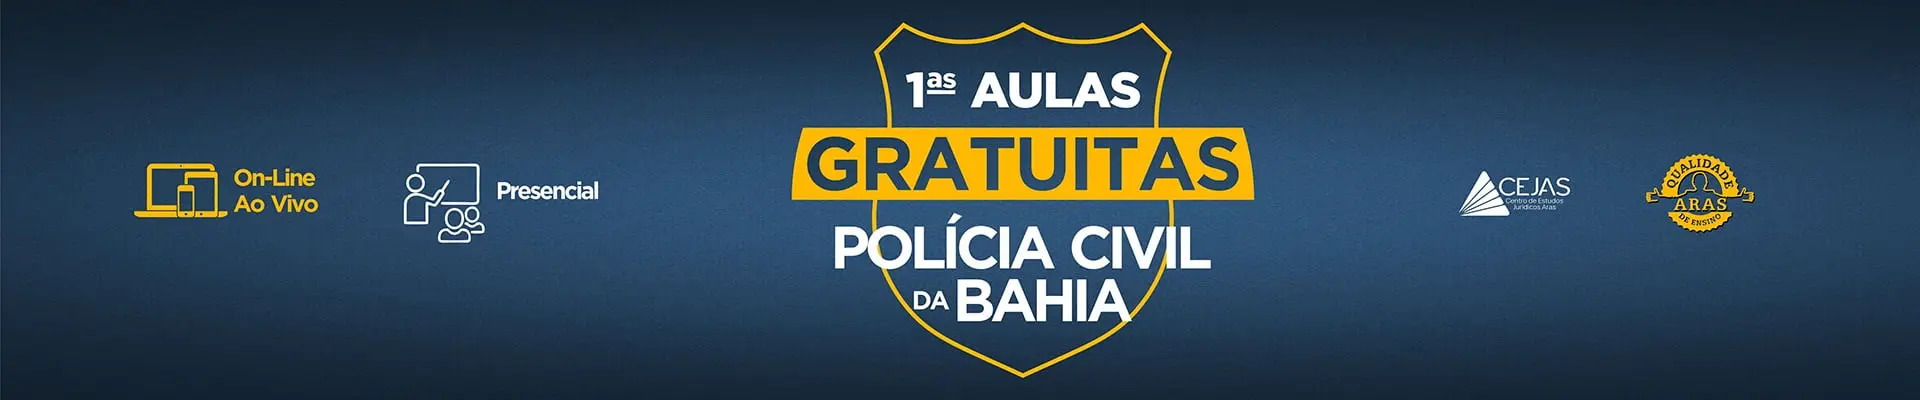 Primeiras Aulas Gratuitas - Polícia Civil Bahia